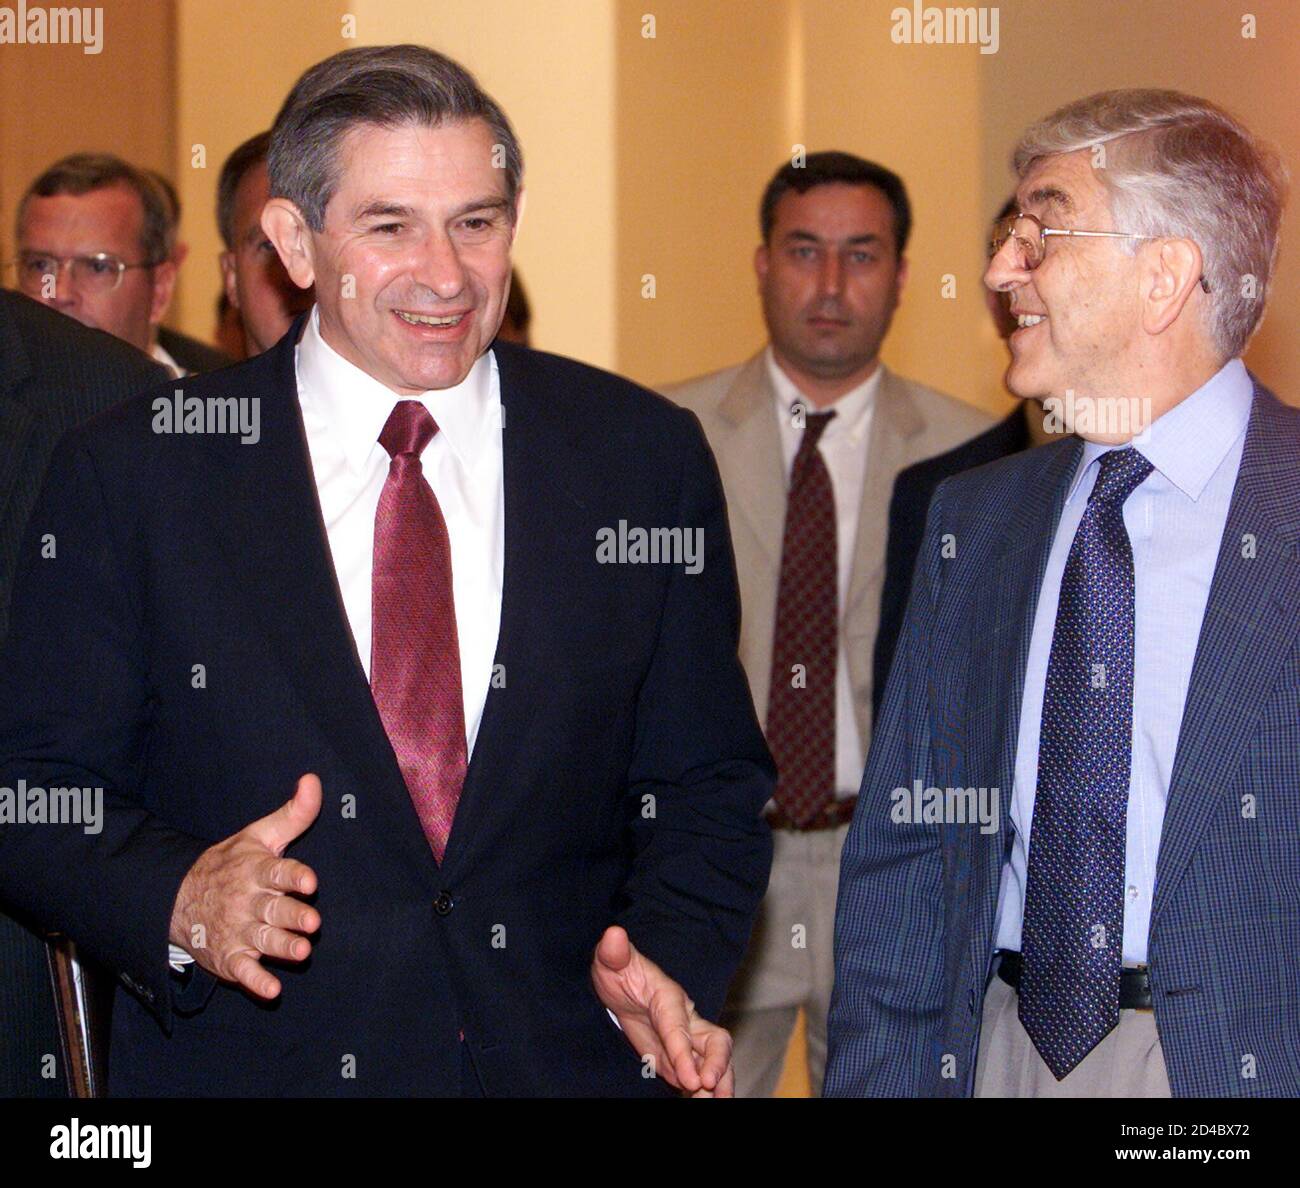 Der stellvertretende US-Verteidigungsminister Paul Wolfowitz (L) spricht gegenüber dem Vorsitzenden der Turkish Economic and Social Studies Foundation (TESEV), Ozdem Sanberk (R), während er am 14. Juli 2002 an einer Konferenz in Istanbul teilnimmt. Wolfowitz wiederholte Präsident Bush mit den Worten: "Wie gefährlich das gegenwärtige (irakische) Regime für die Vereinigten Staaten ist und dass es eine Gefahr darstellt, mit der wir nicht auf unlauteres Leben leben können". "Ein demokratischer Irak wird das Wirtschaftswachstum mit Nachbarn wie der Türkei ankurbeln und die Region stabilisieren", fügte Wolfowitz hinzu. Wolfowitz wird für einen Tagesausflug nach Afghanistan fliegen und wird nach Ankara zurückkehren, um die Türken zu treffen Stockfoto